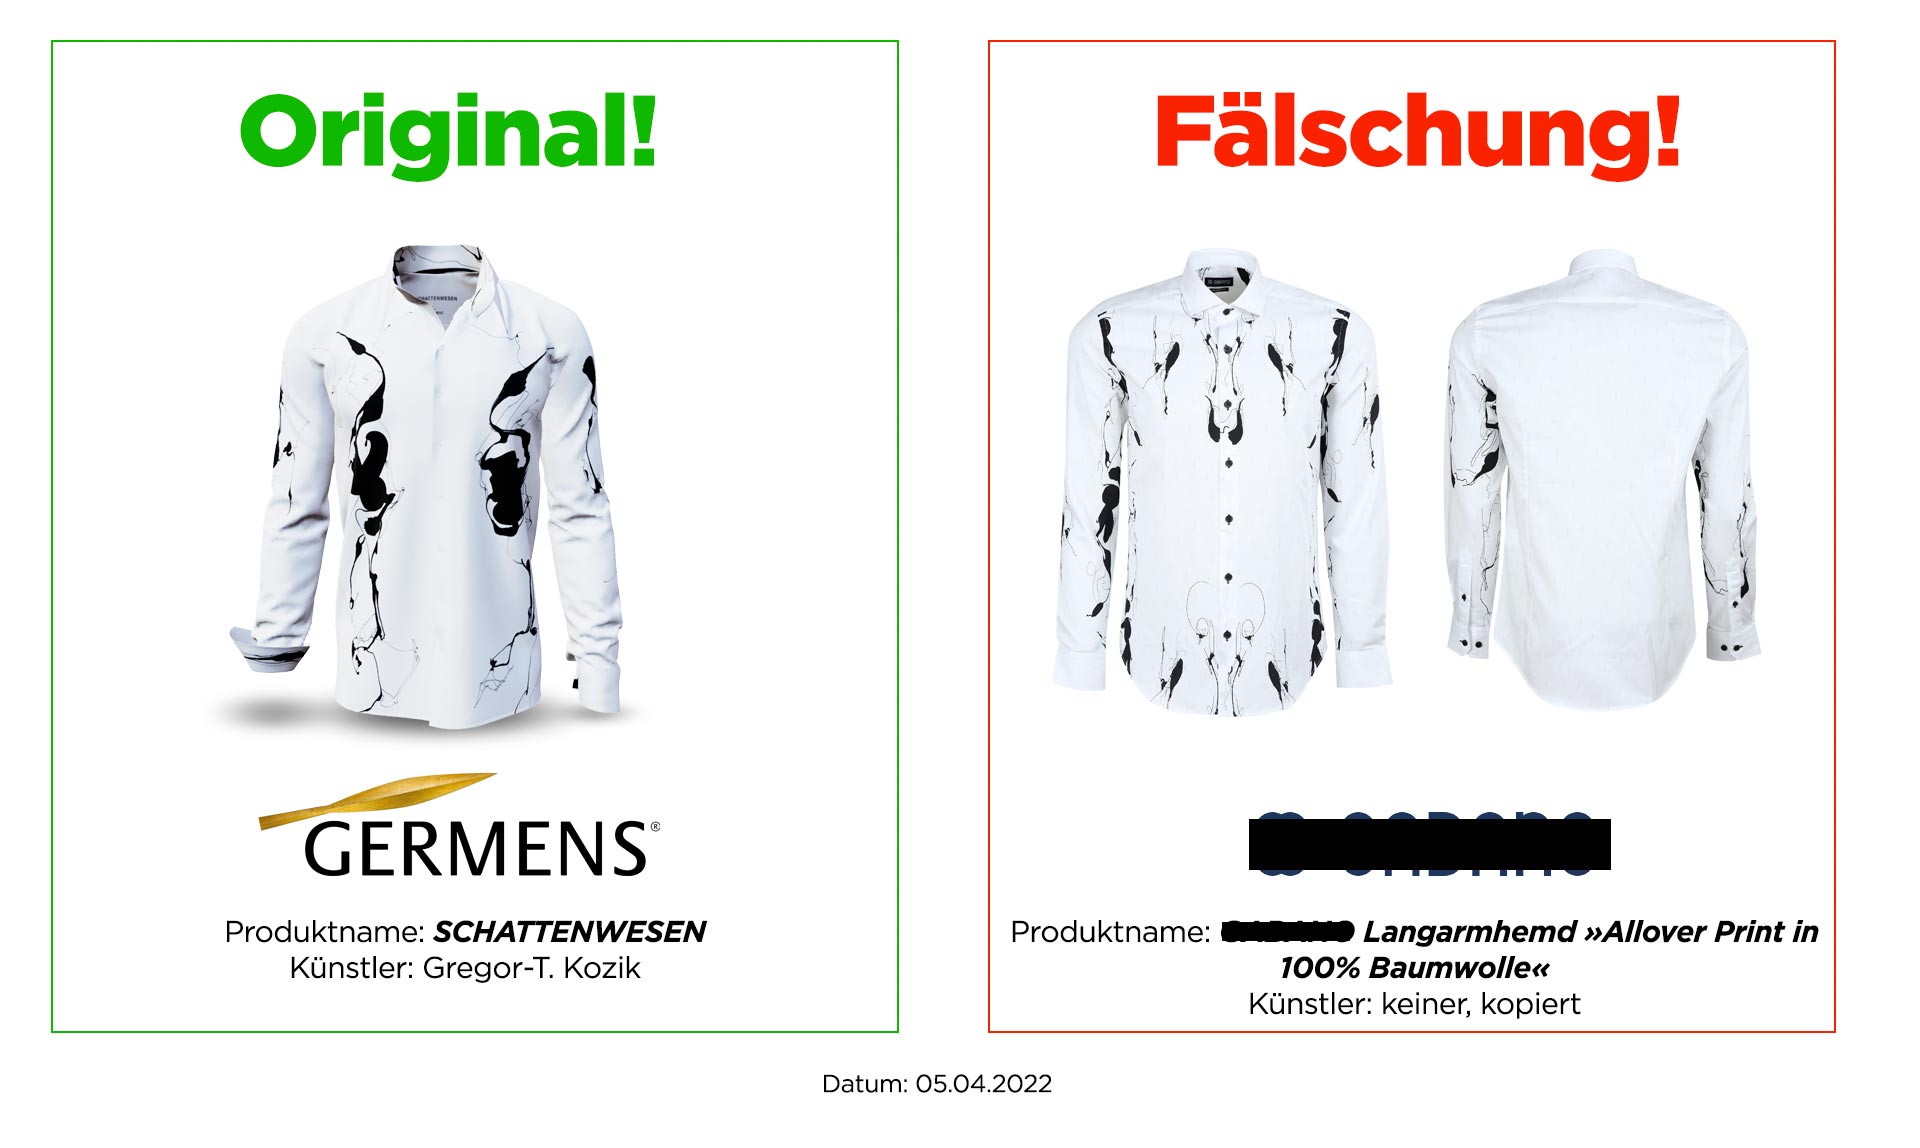 Original GERMENS® Hemd SCHATTENWESEN und Plagiat